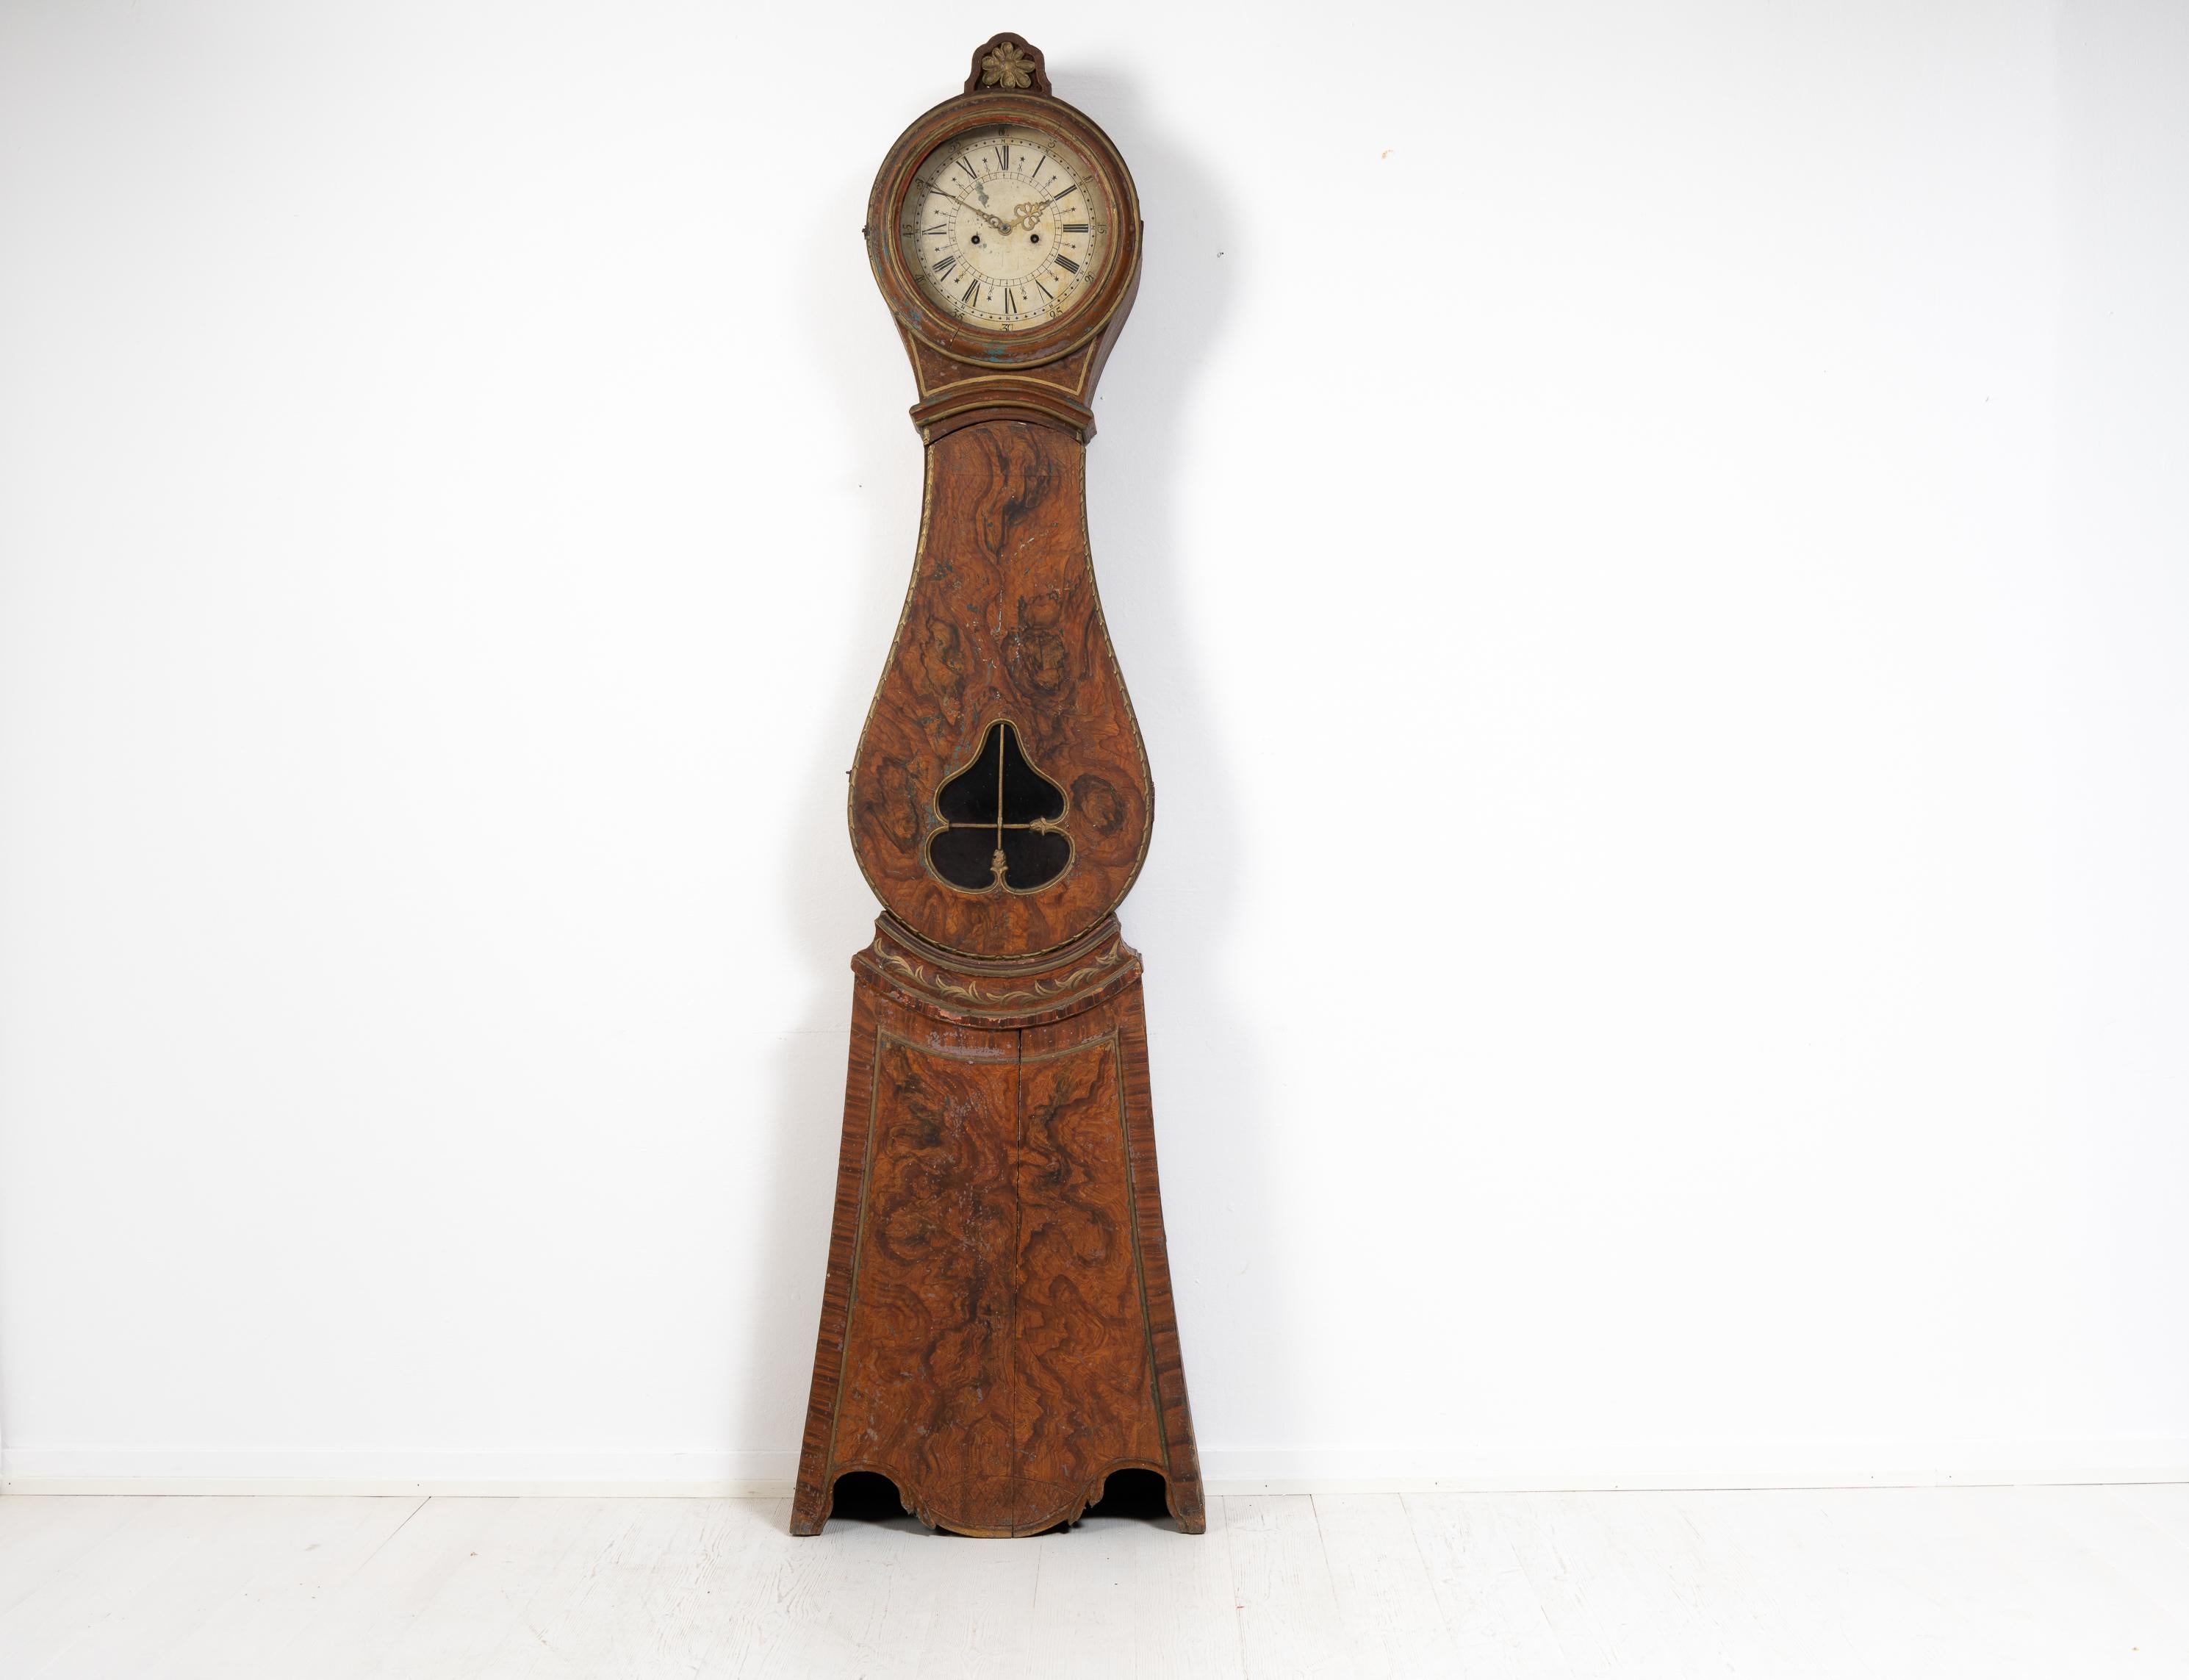 Véritable horloge à long boîtier de Suède fabriquée dans les premières années du 19e siècle, vers 1810. L'horloge est inhabituelle et authentique. Elle provient du village d'Arbrå dans le Hälsingland, situé au centre de la Suède. L'horloge est dans